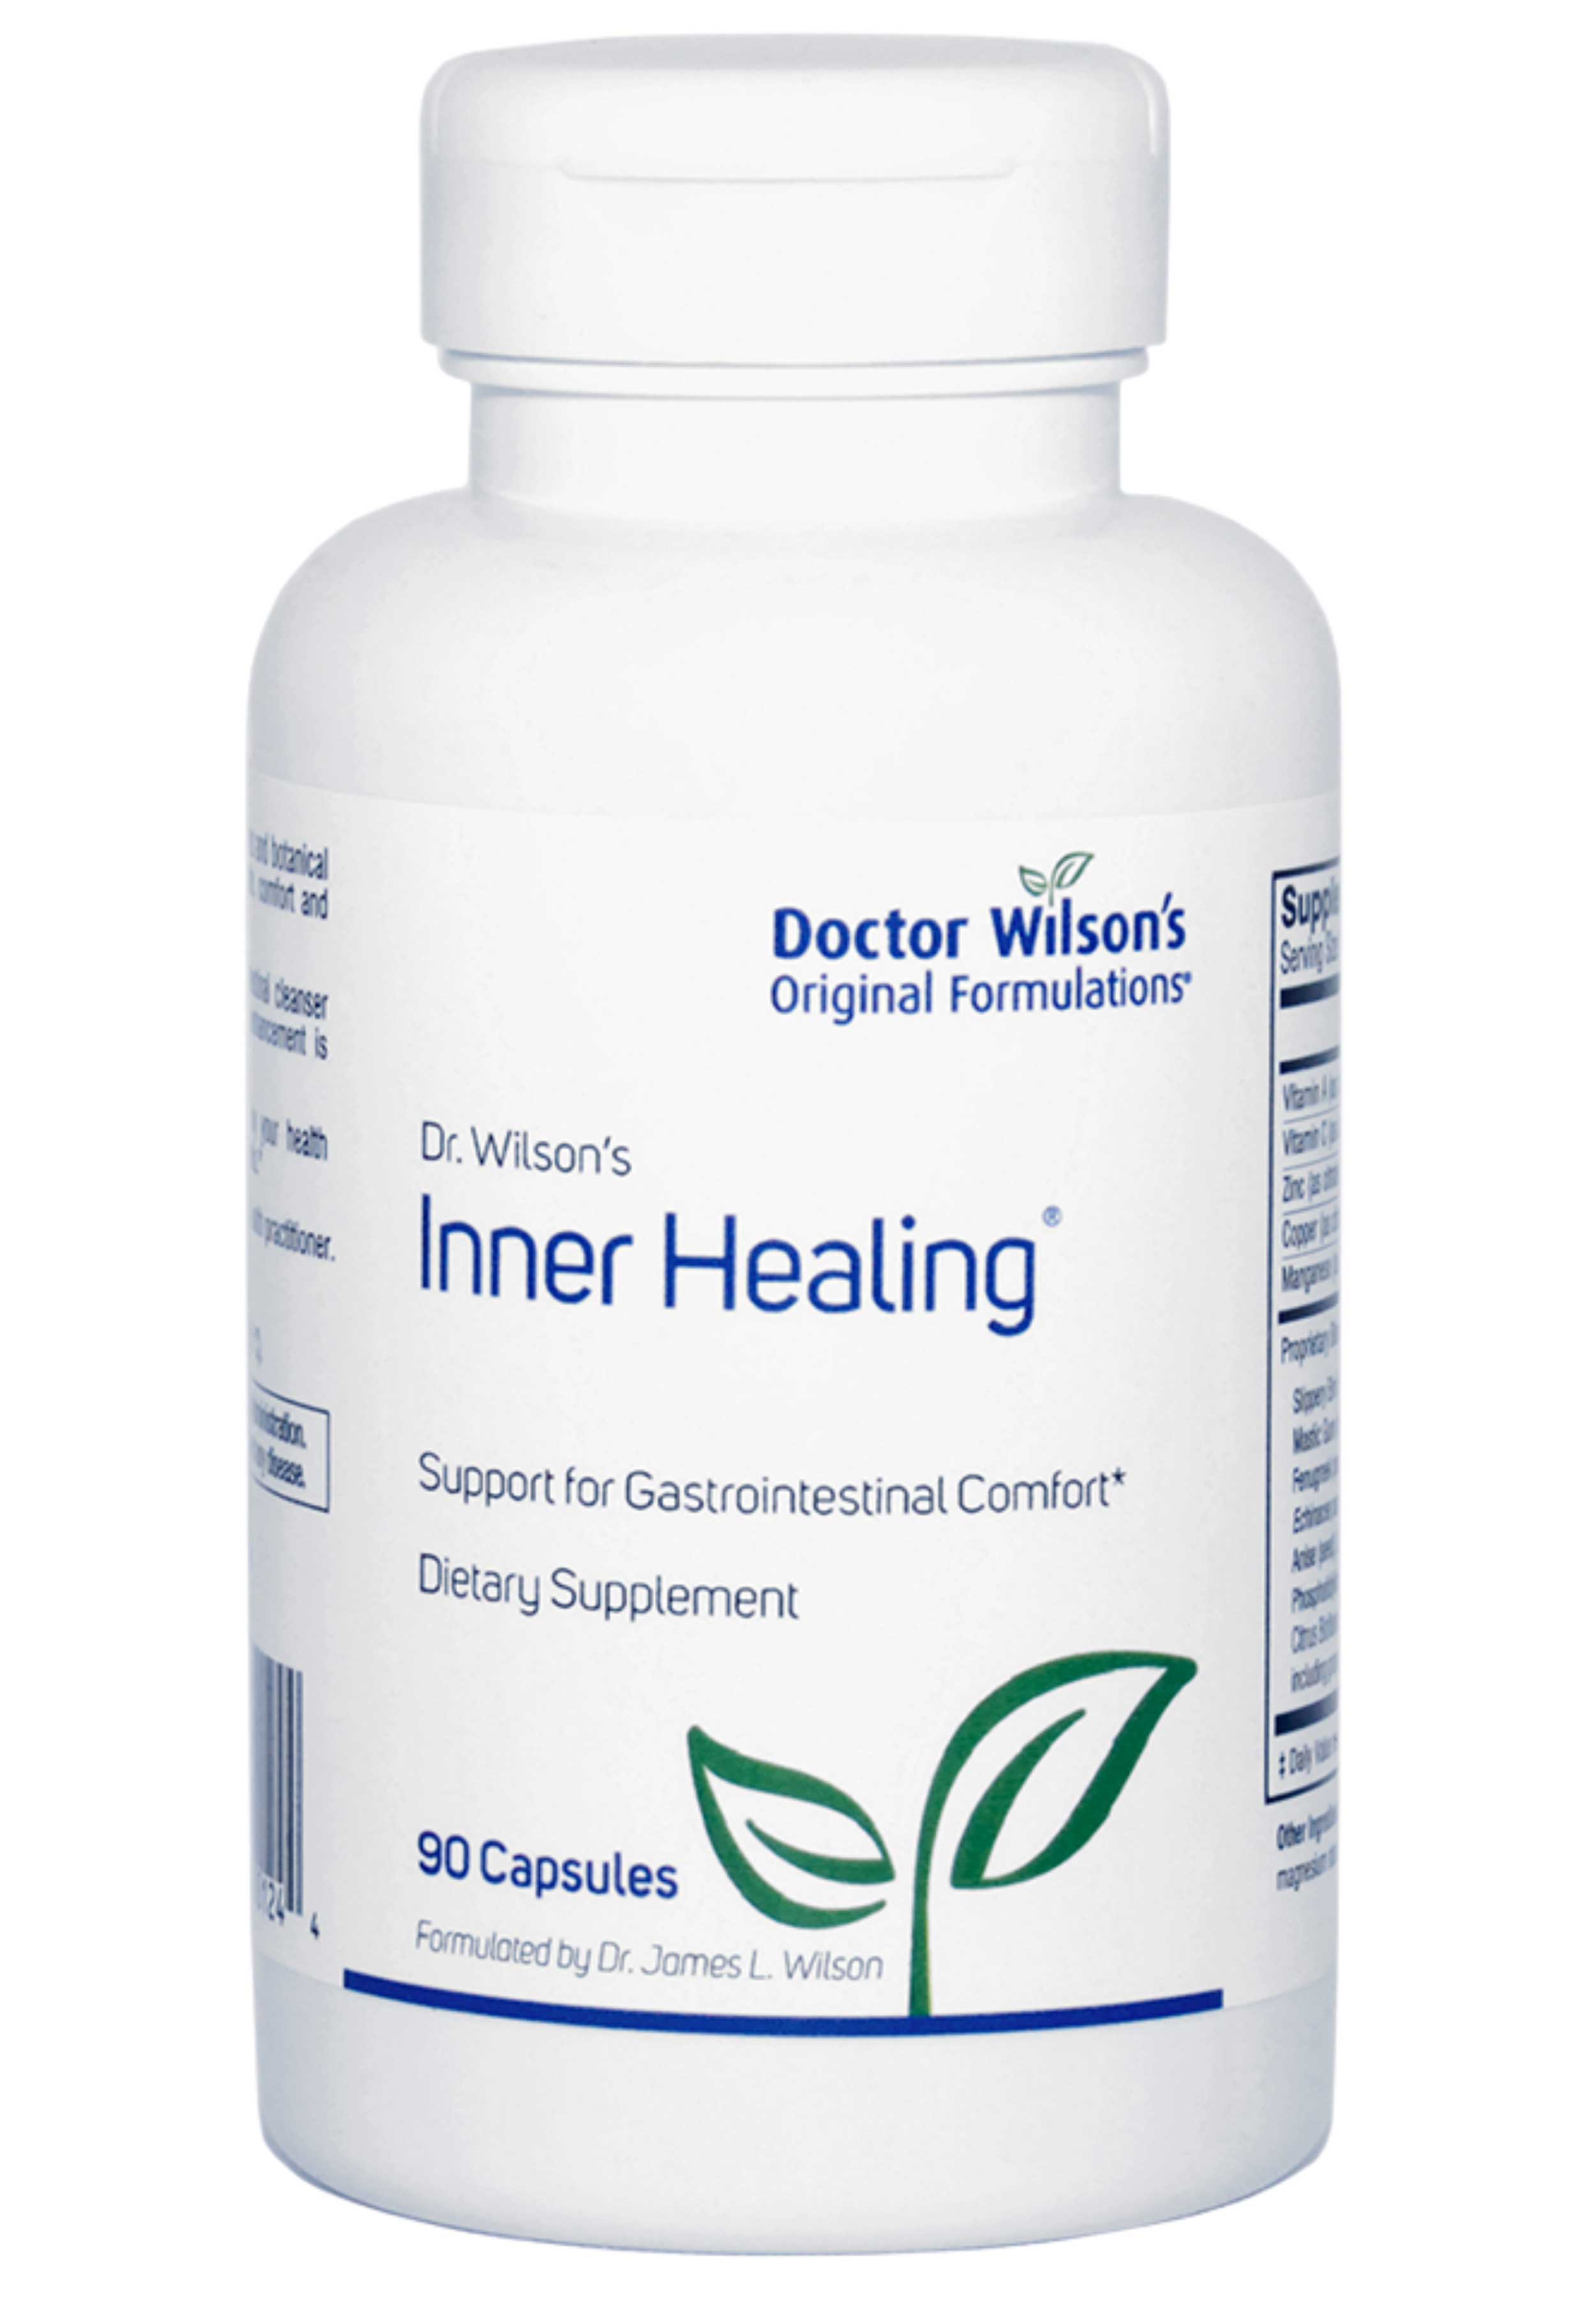 Doctor Wilson's Original Formulations Inner Healing